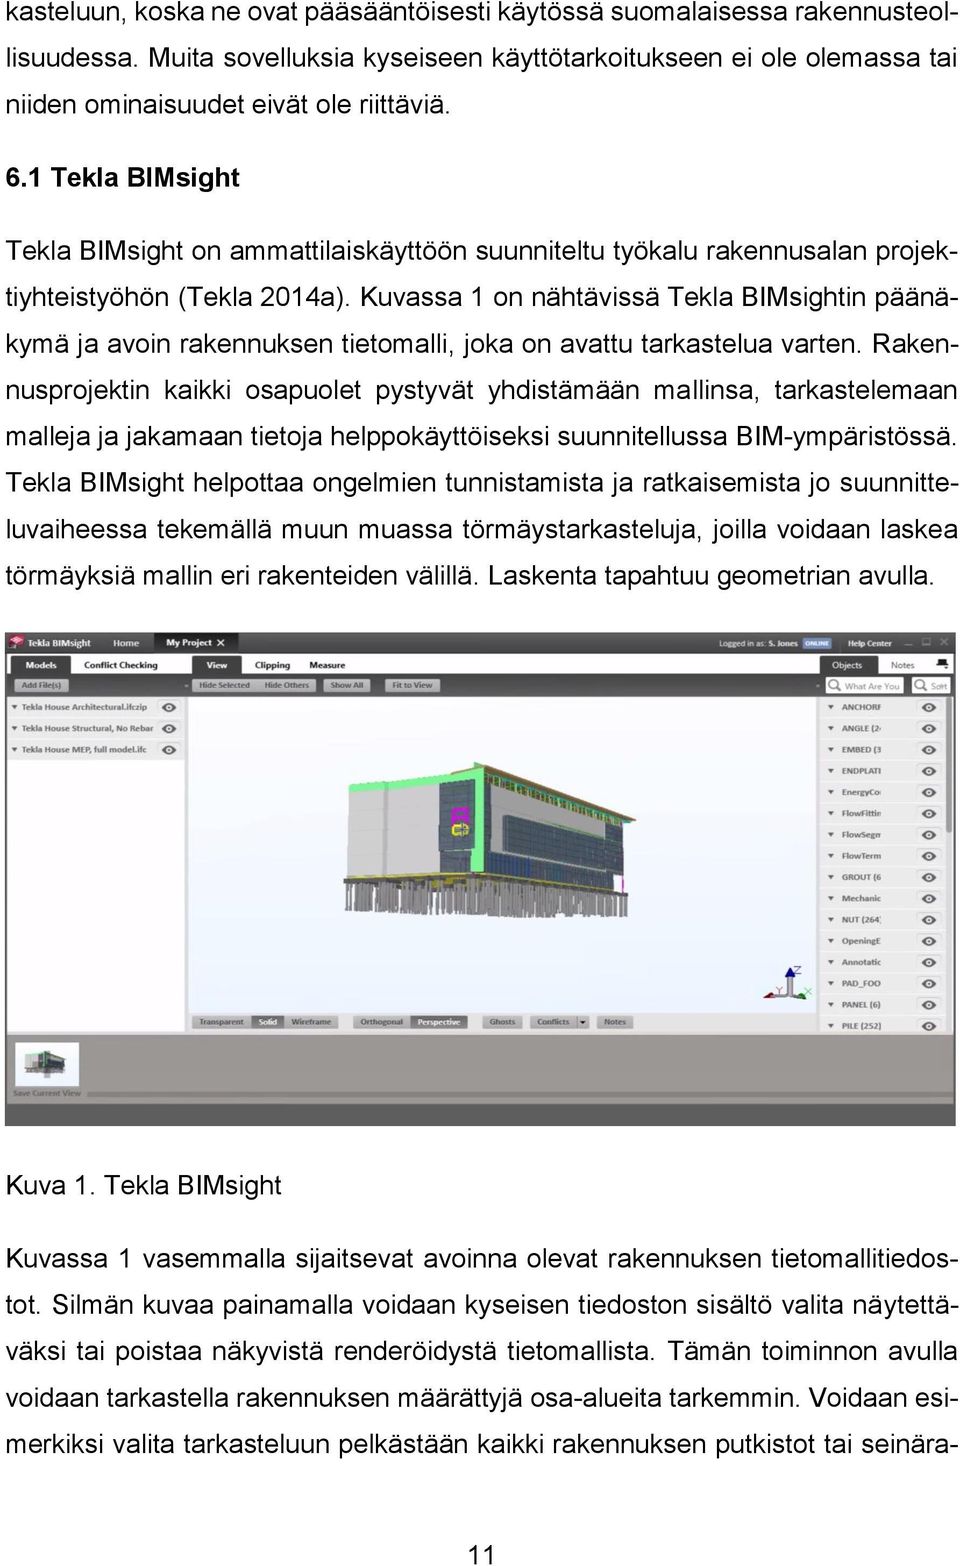 Kuvassa 1 on nähtävissä Tekla BIMsightin päänäkymä ja avoin rakennuksen tietomalli, joka on avattu tarkastelua varten.